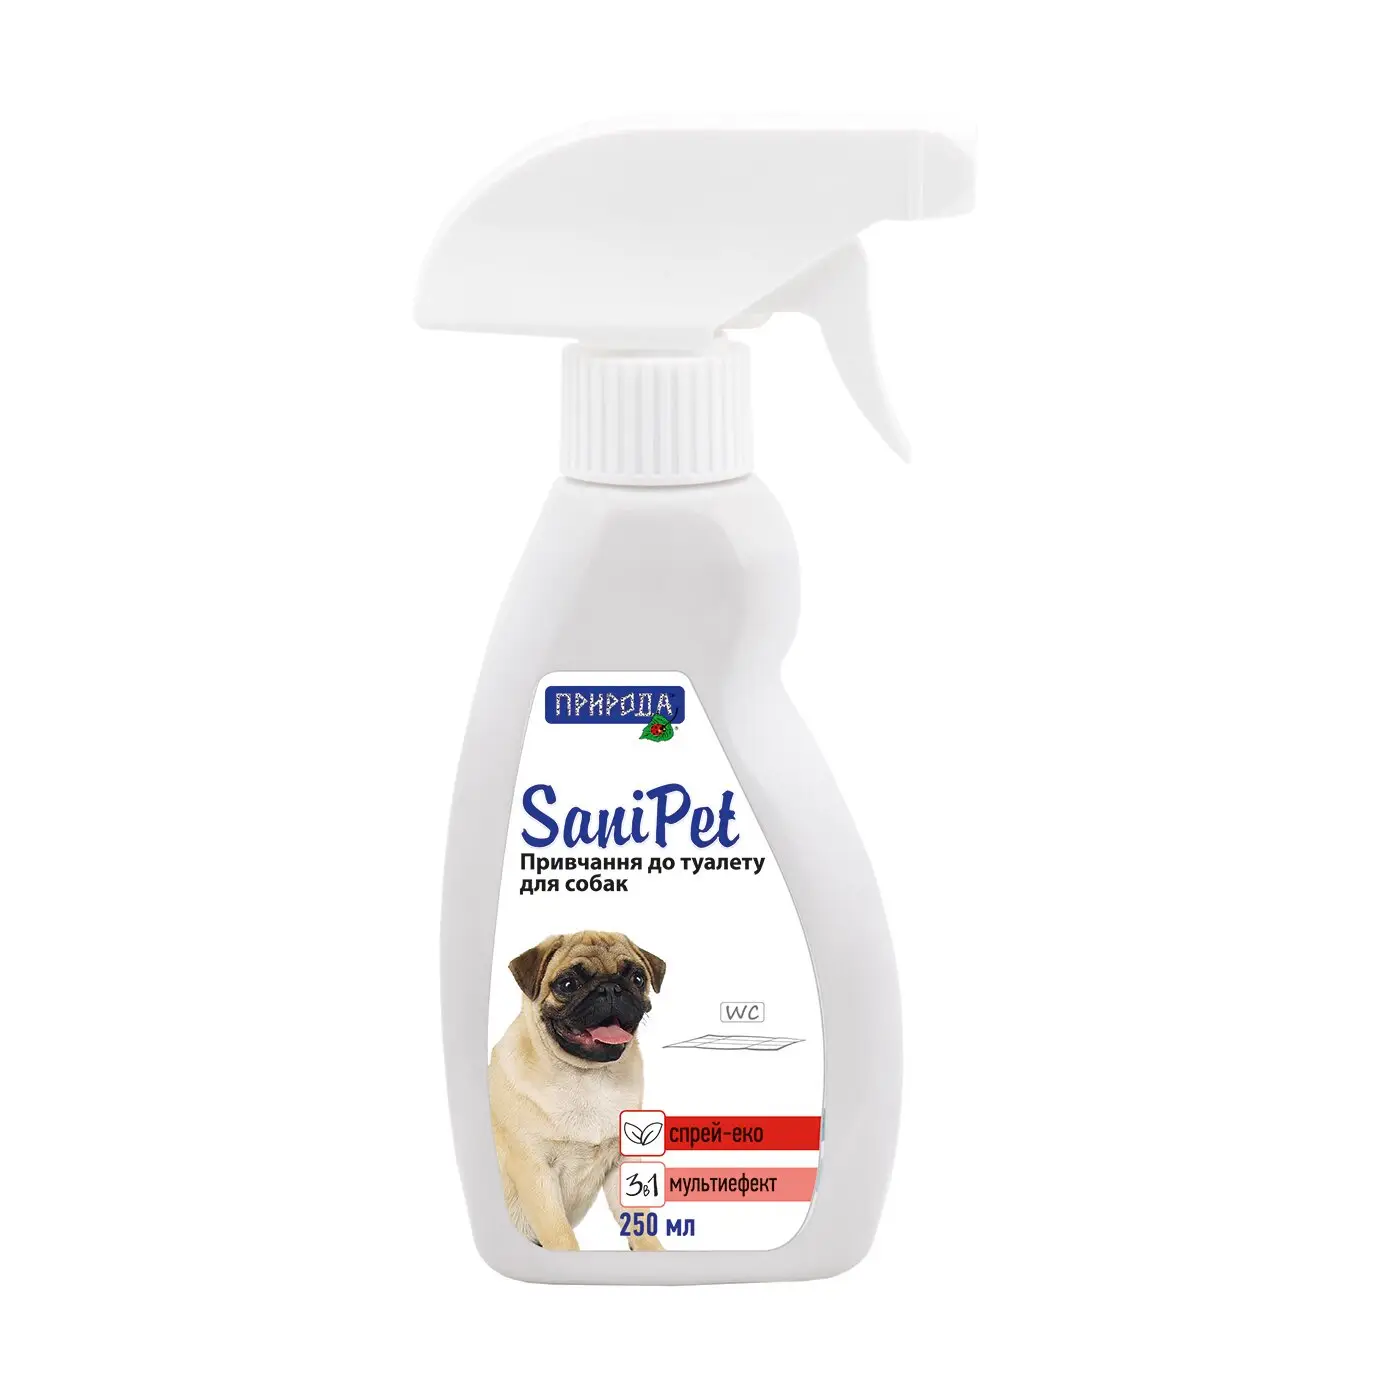 Природа Sani Pet спрей-відлякувач для собак (для привчання до туалету) 250 мл1